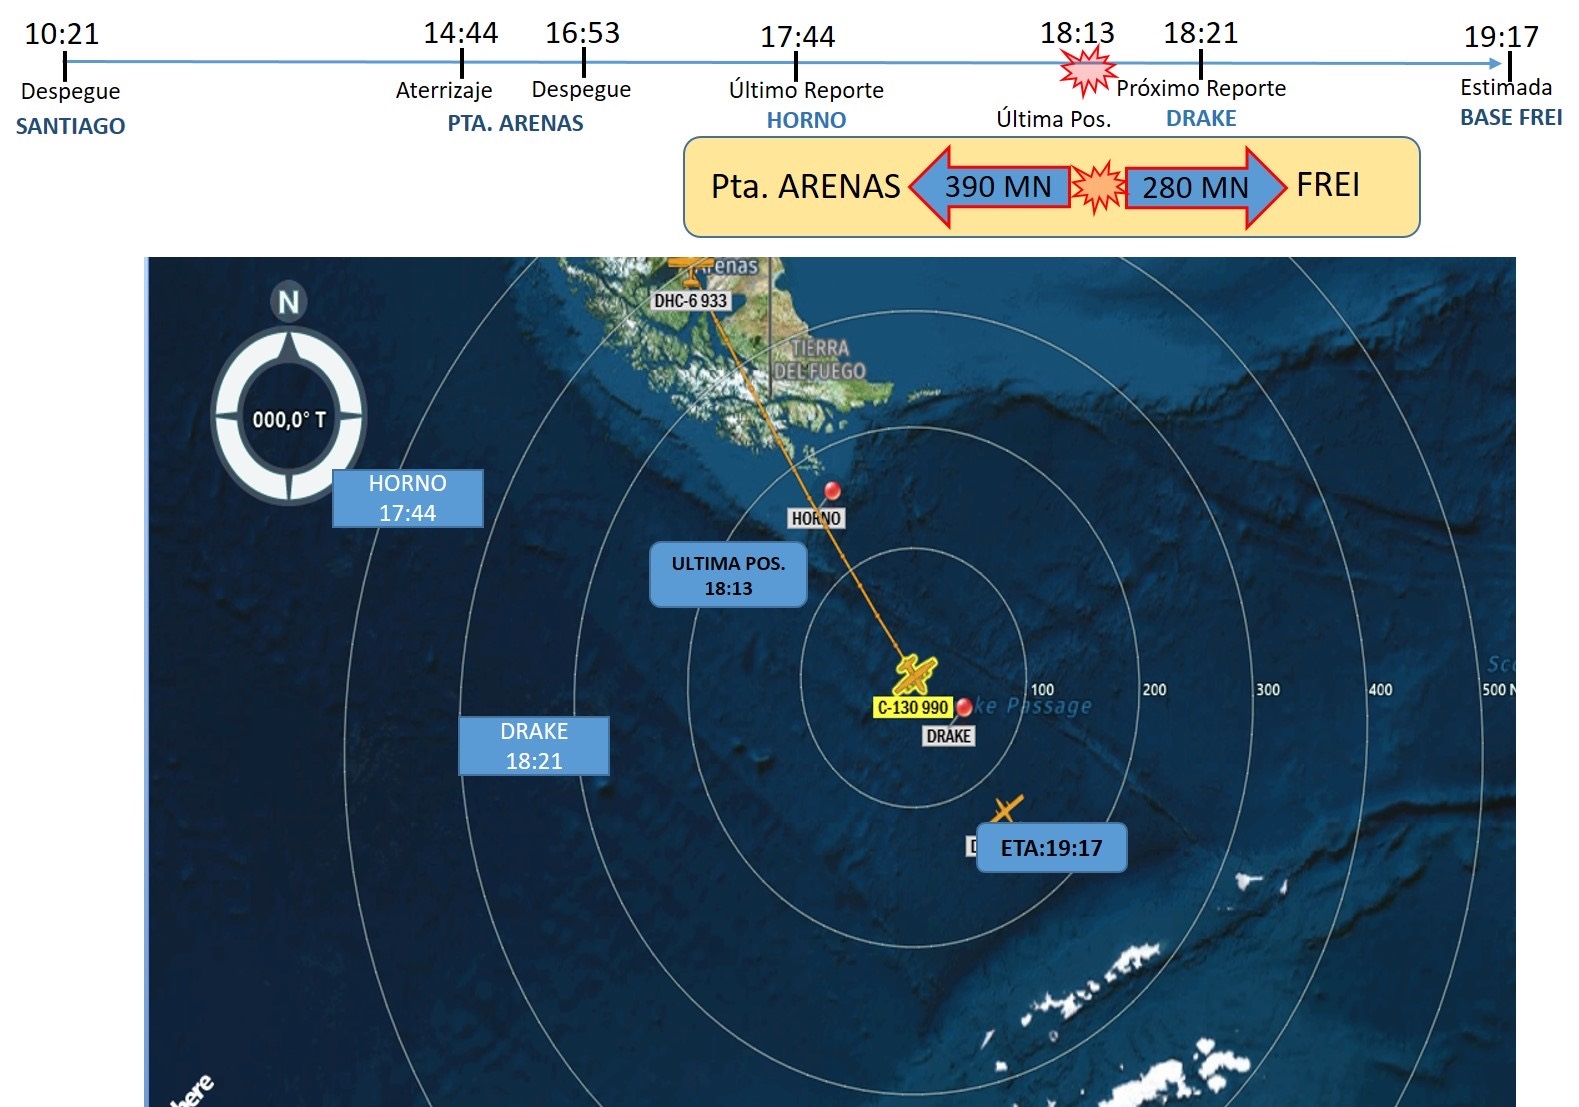 FACH informa nómina de la tripulación y pasajeros de avión C 130 siniestrado en viaje a la Antártica